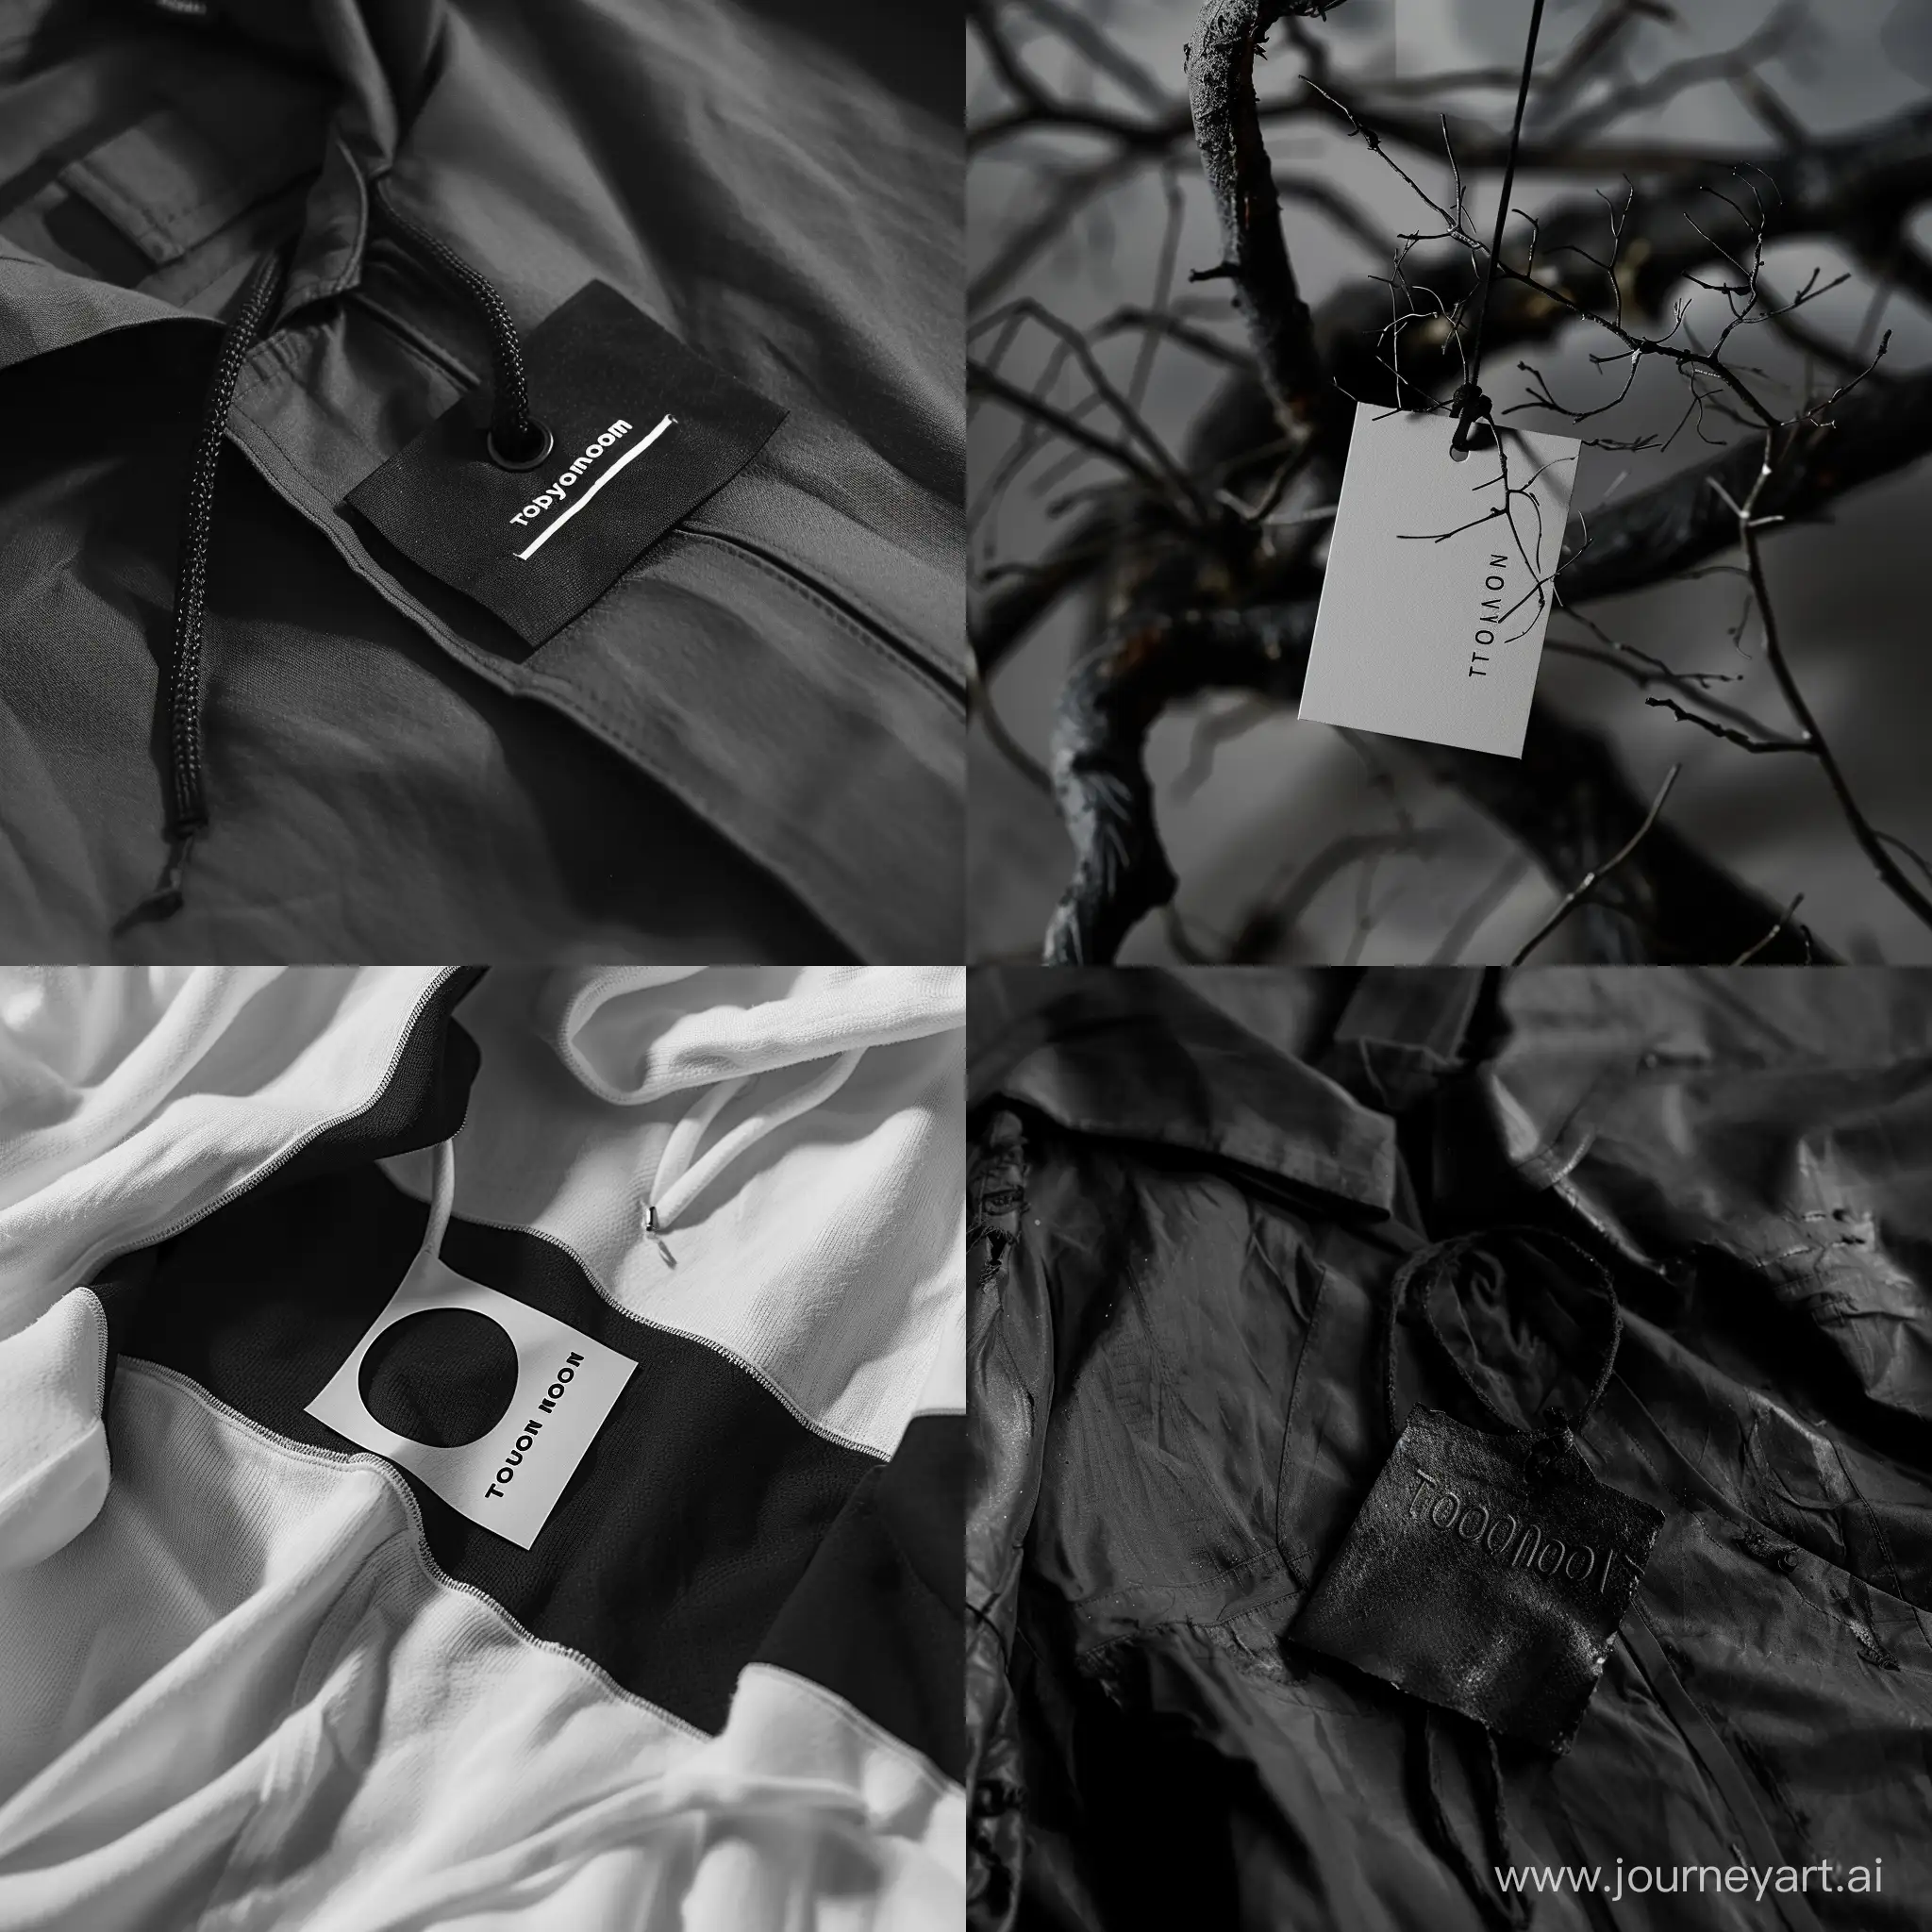 создай мне необычную этикетку для одежды, сделай для нее необычное расположение. название бренда: Totallynoon
этикетка может быть представлена в виде неразборчивых букв
сделай этикетку в стиле Maison Margiela
черно белый мрачный стиль